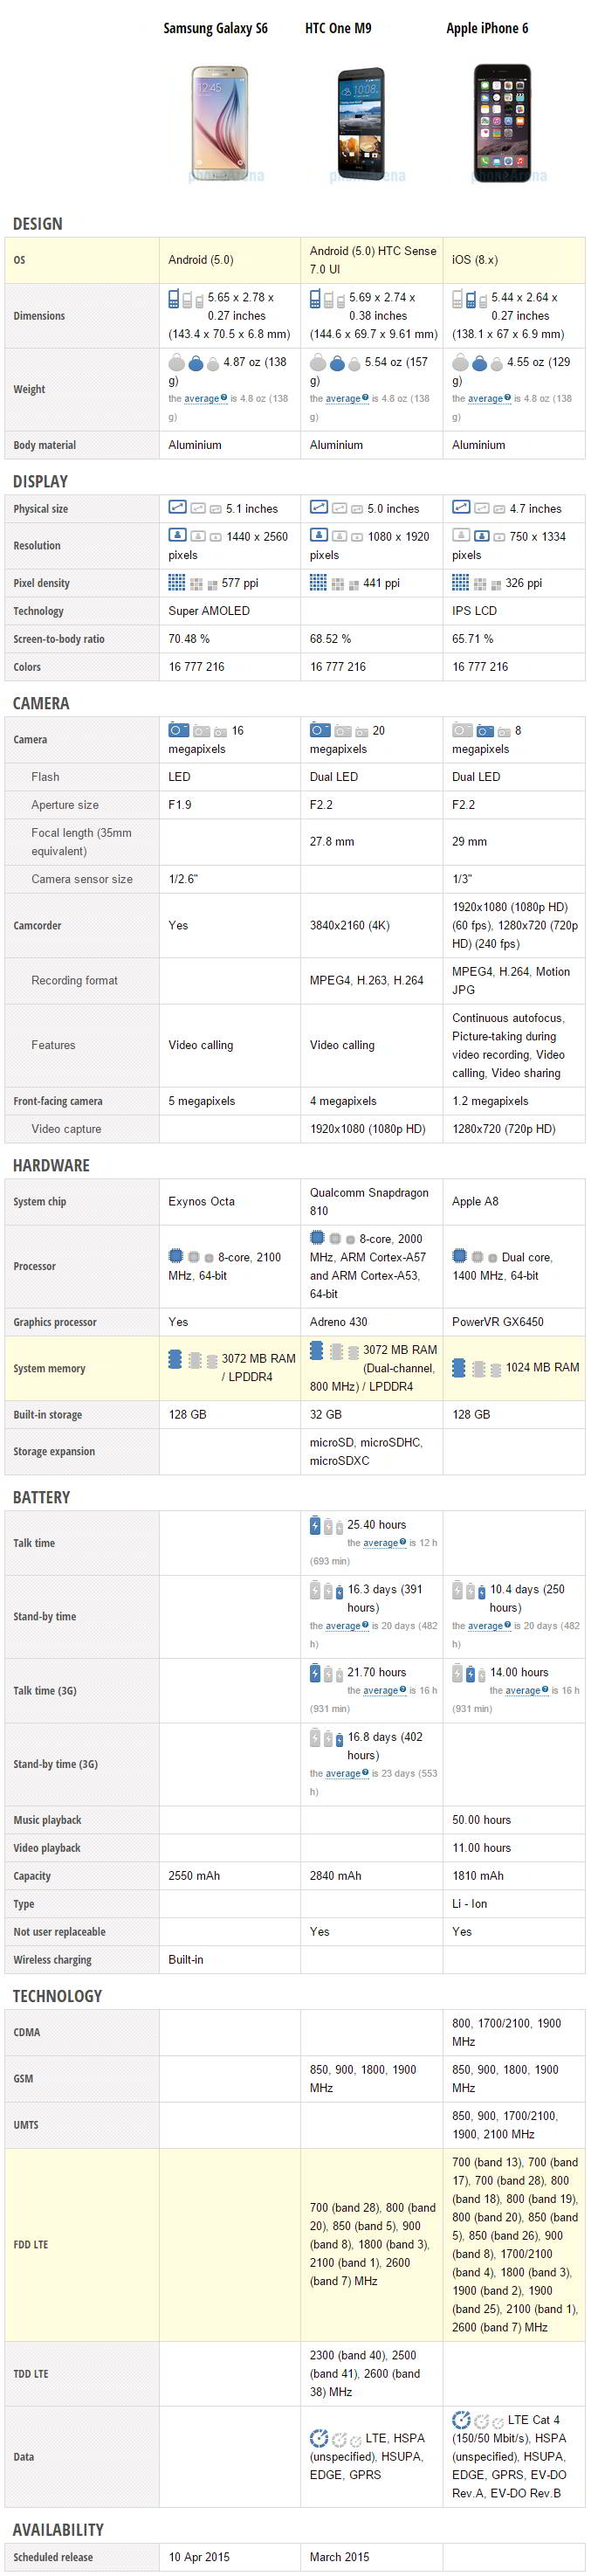 Samsung Galaxy S6 vs HTC One M9 vs Apple iPhone 6 specifikationer jämförelse